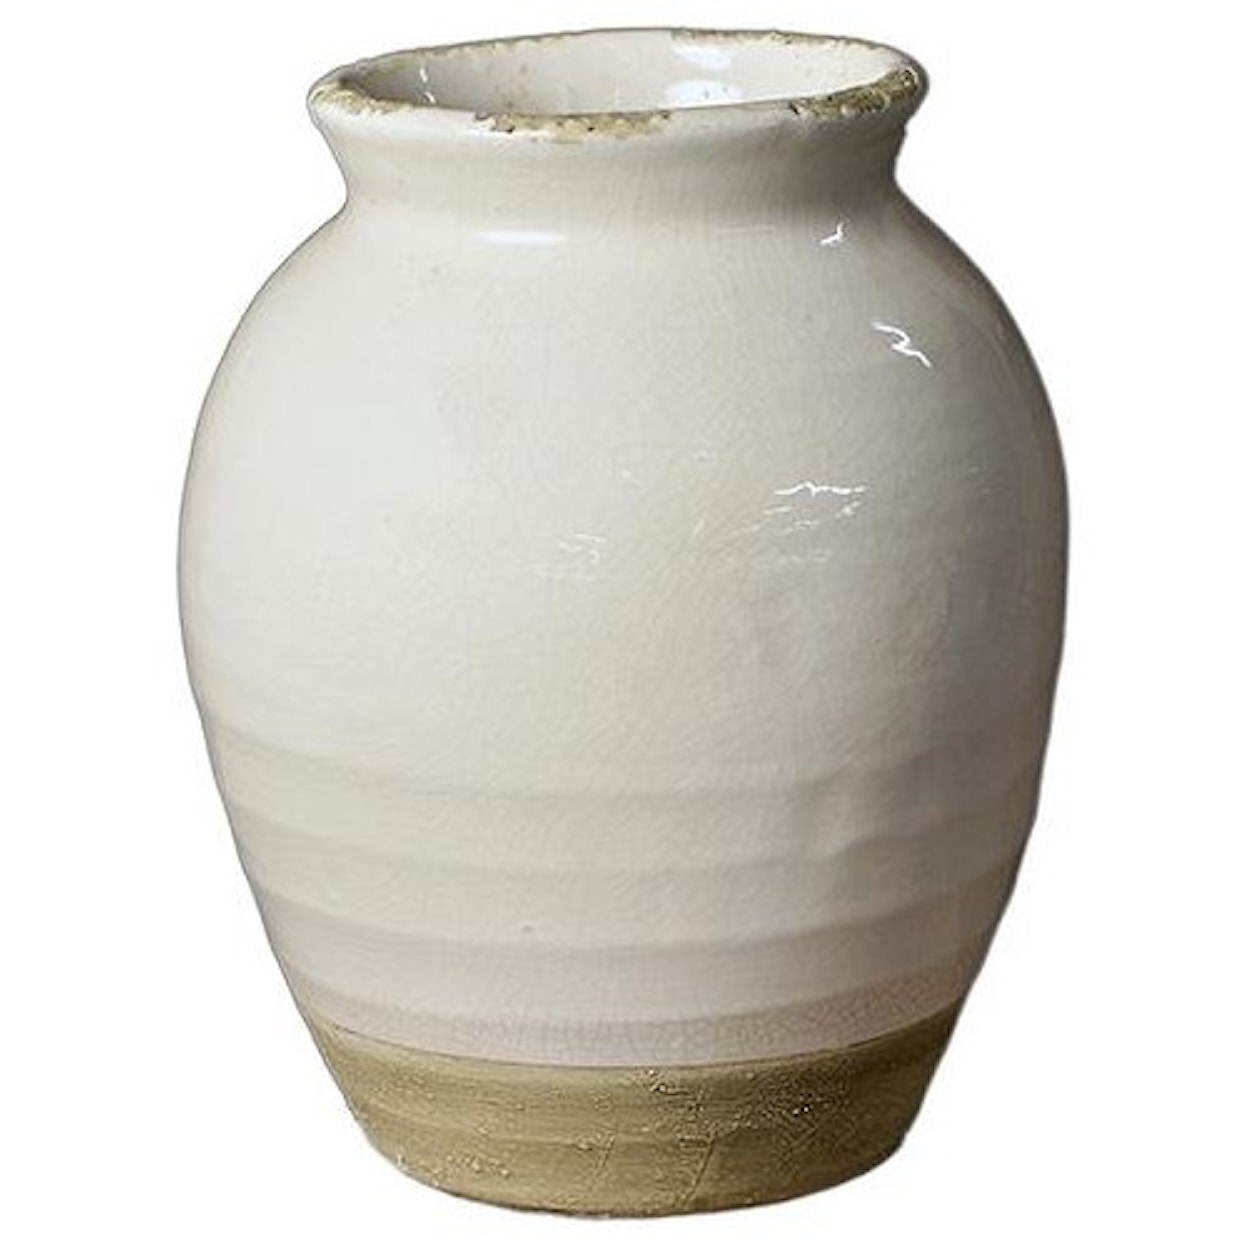 Dovetail Furniture Accessories Solange Vase